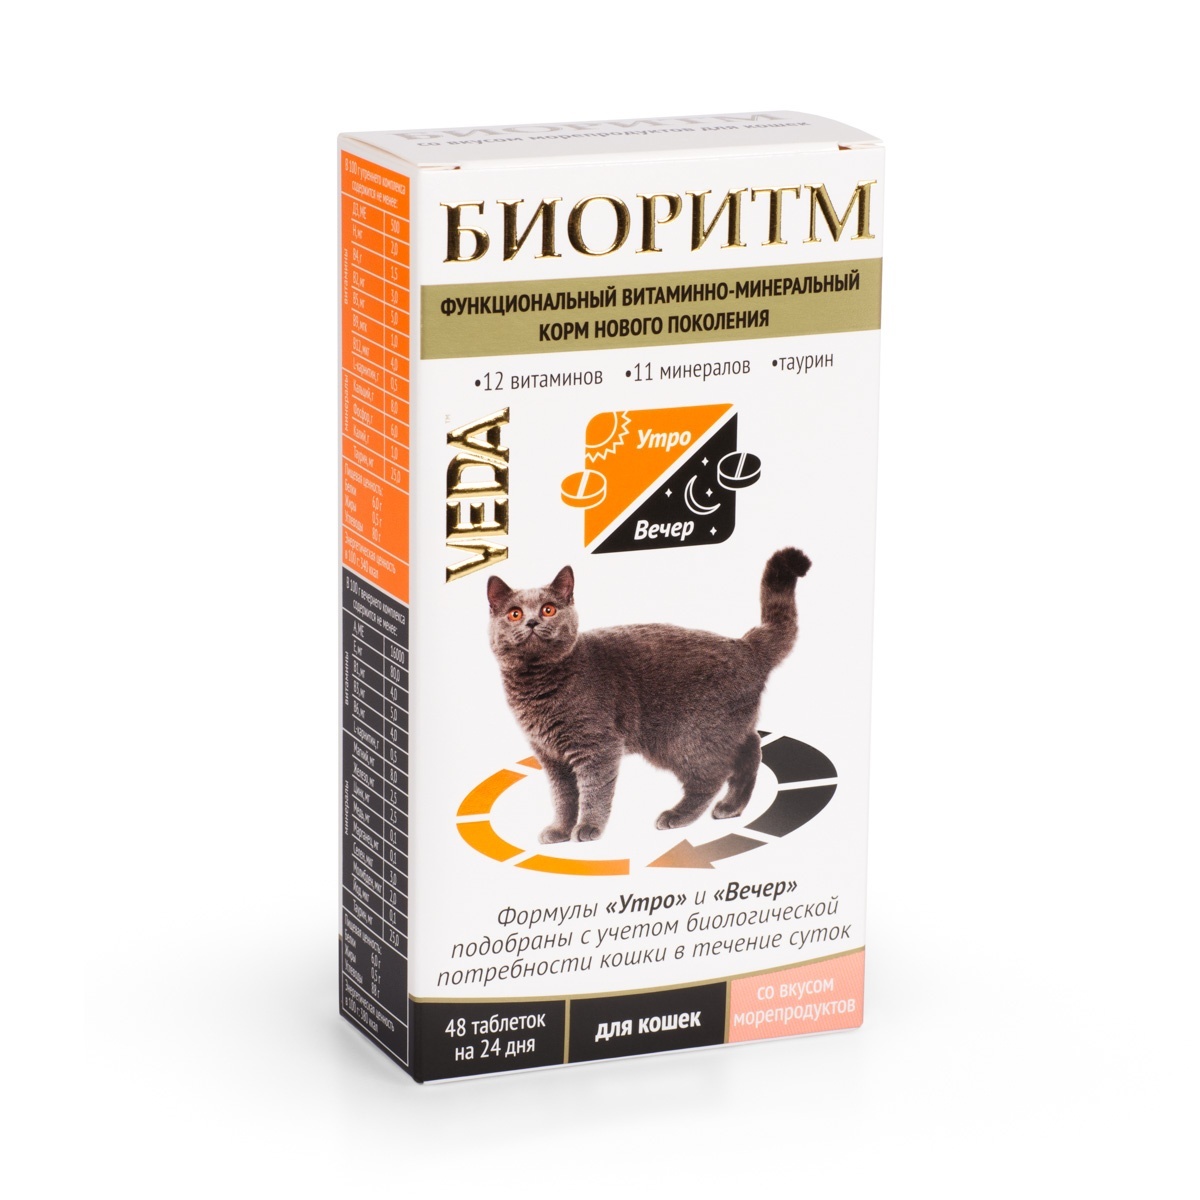 Веда Веда биоритм со вкусом морепродуктов для кошек (235 г) веда веда аванпост bio шампунь репеллентный для кошек 250 г